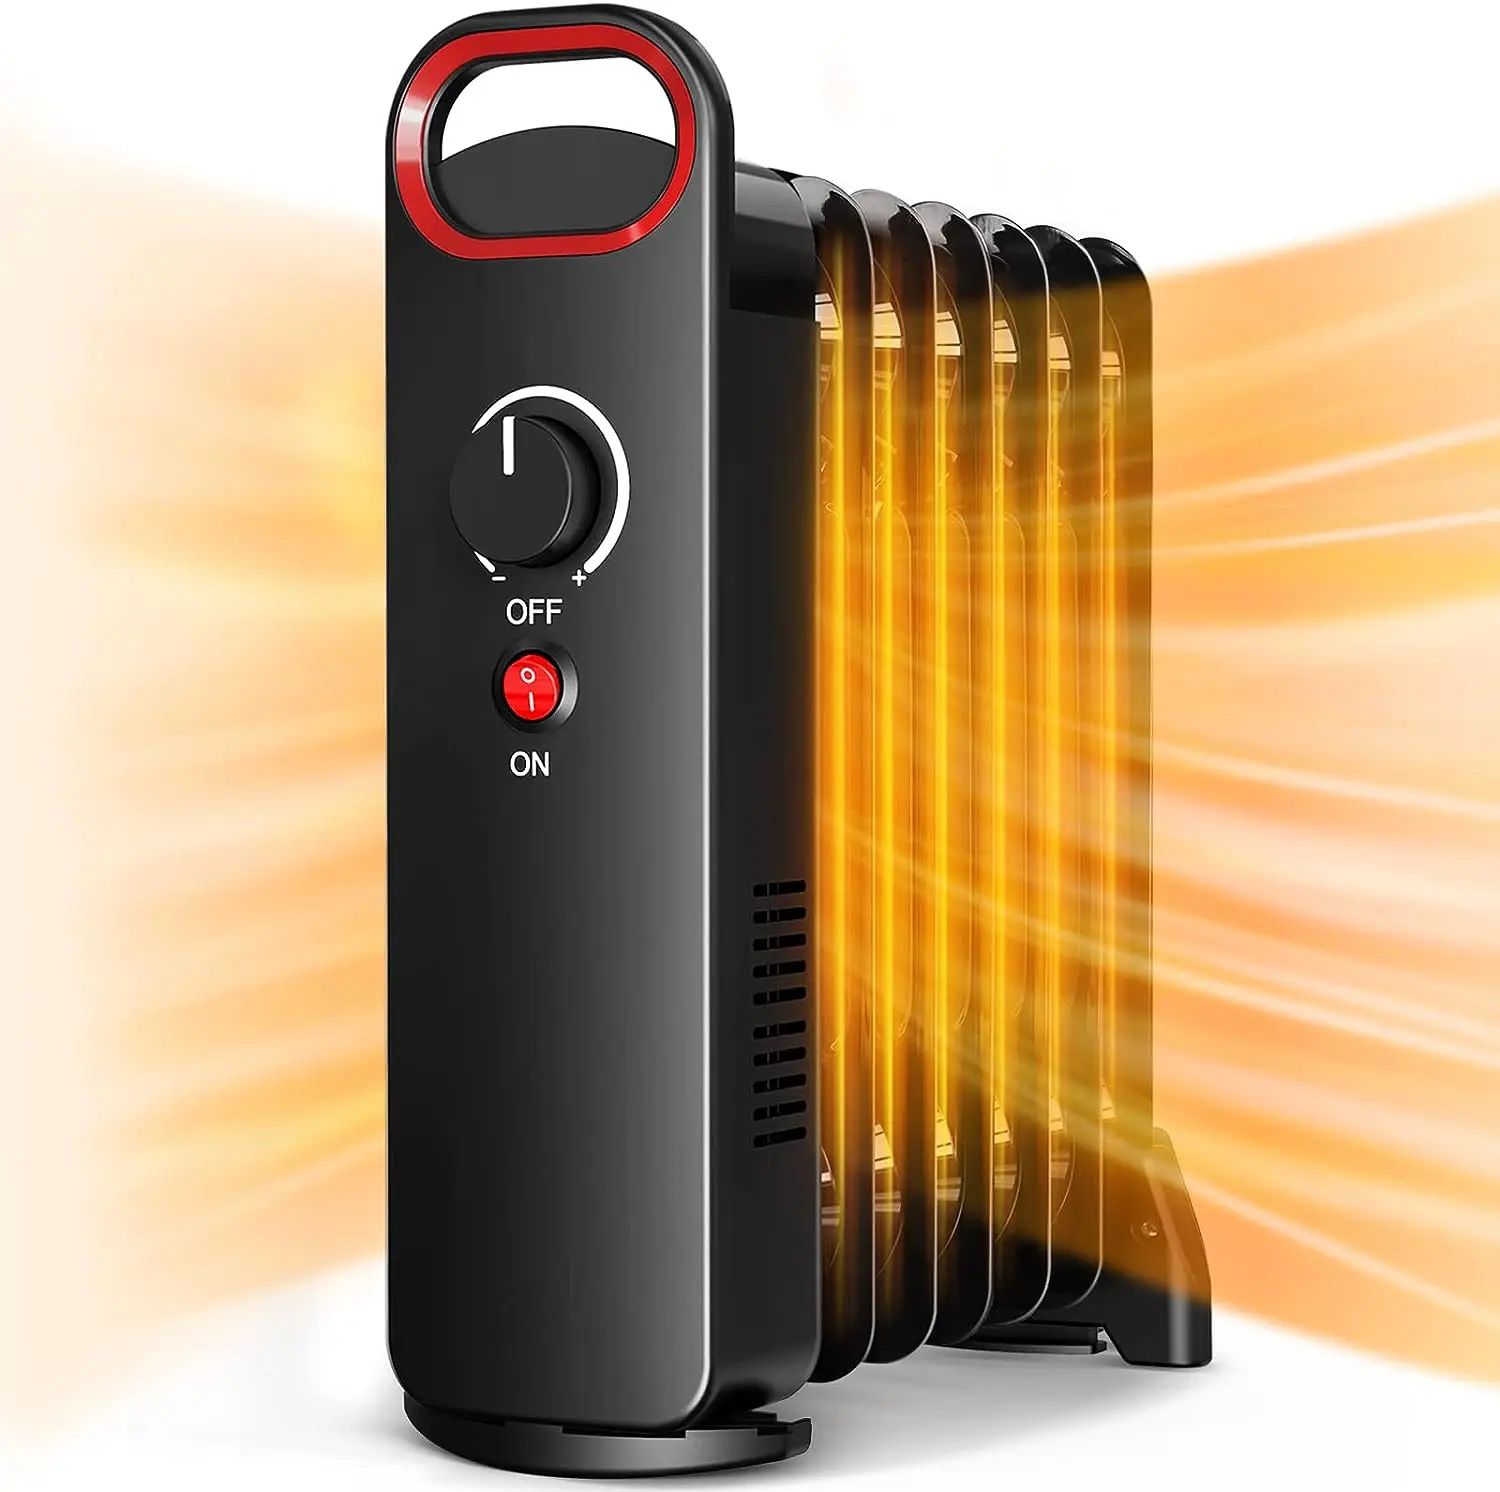 

Нагреватель, Нагреватель радиатора с быстрым нагревом, 700 Вт, с автоматическим термостатом, защита от перегрева, портативный нагреватель помещений с 2 аккумуляторами